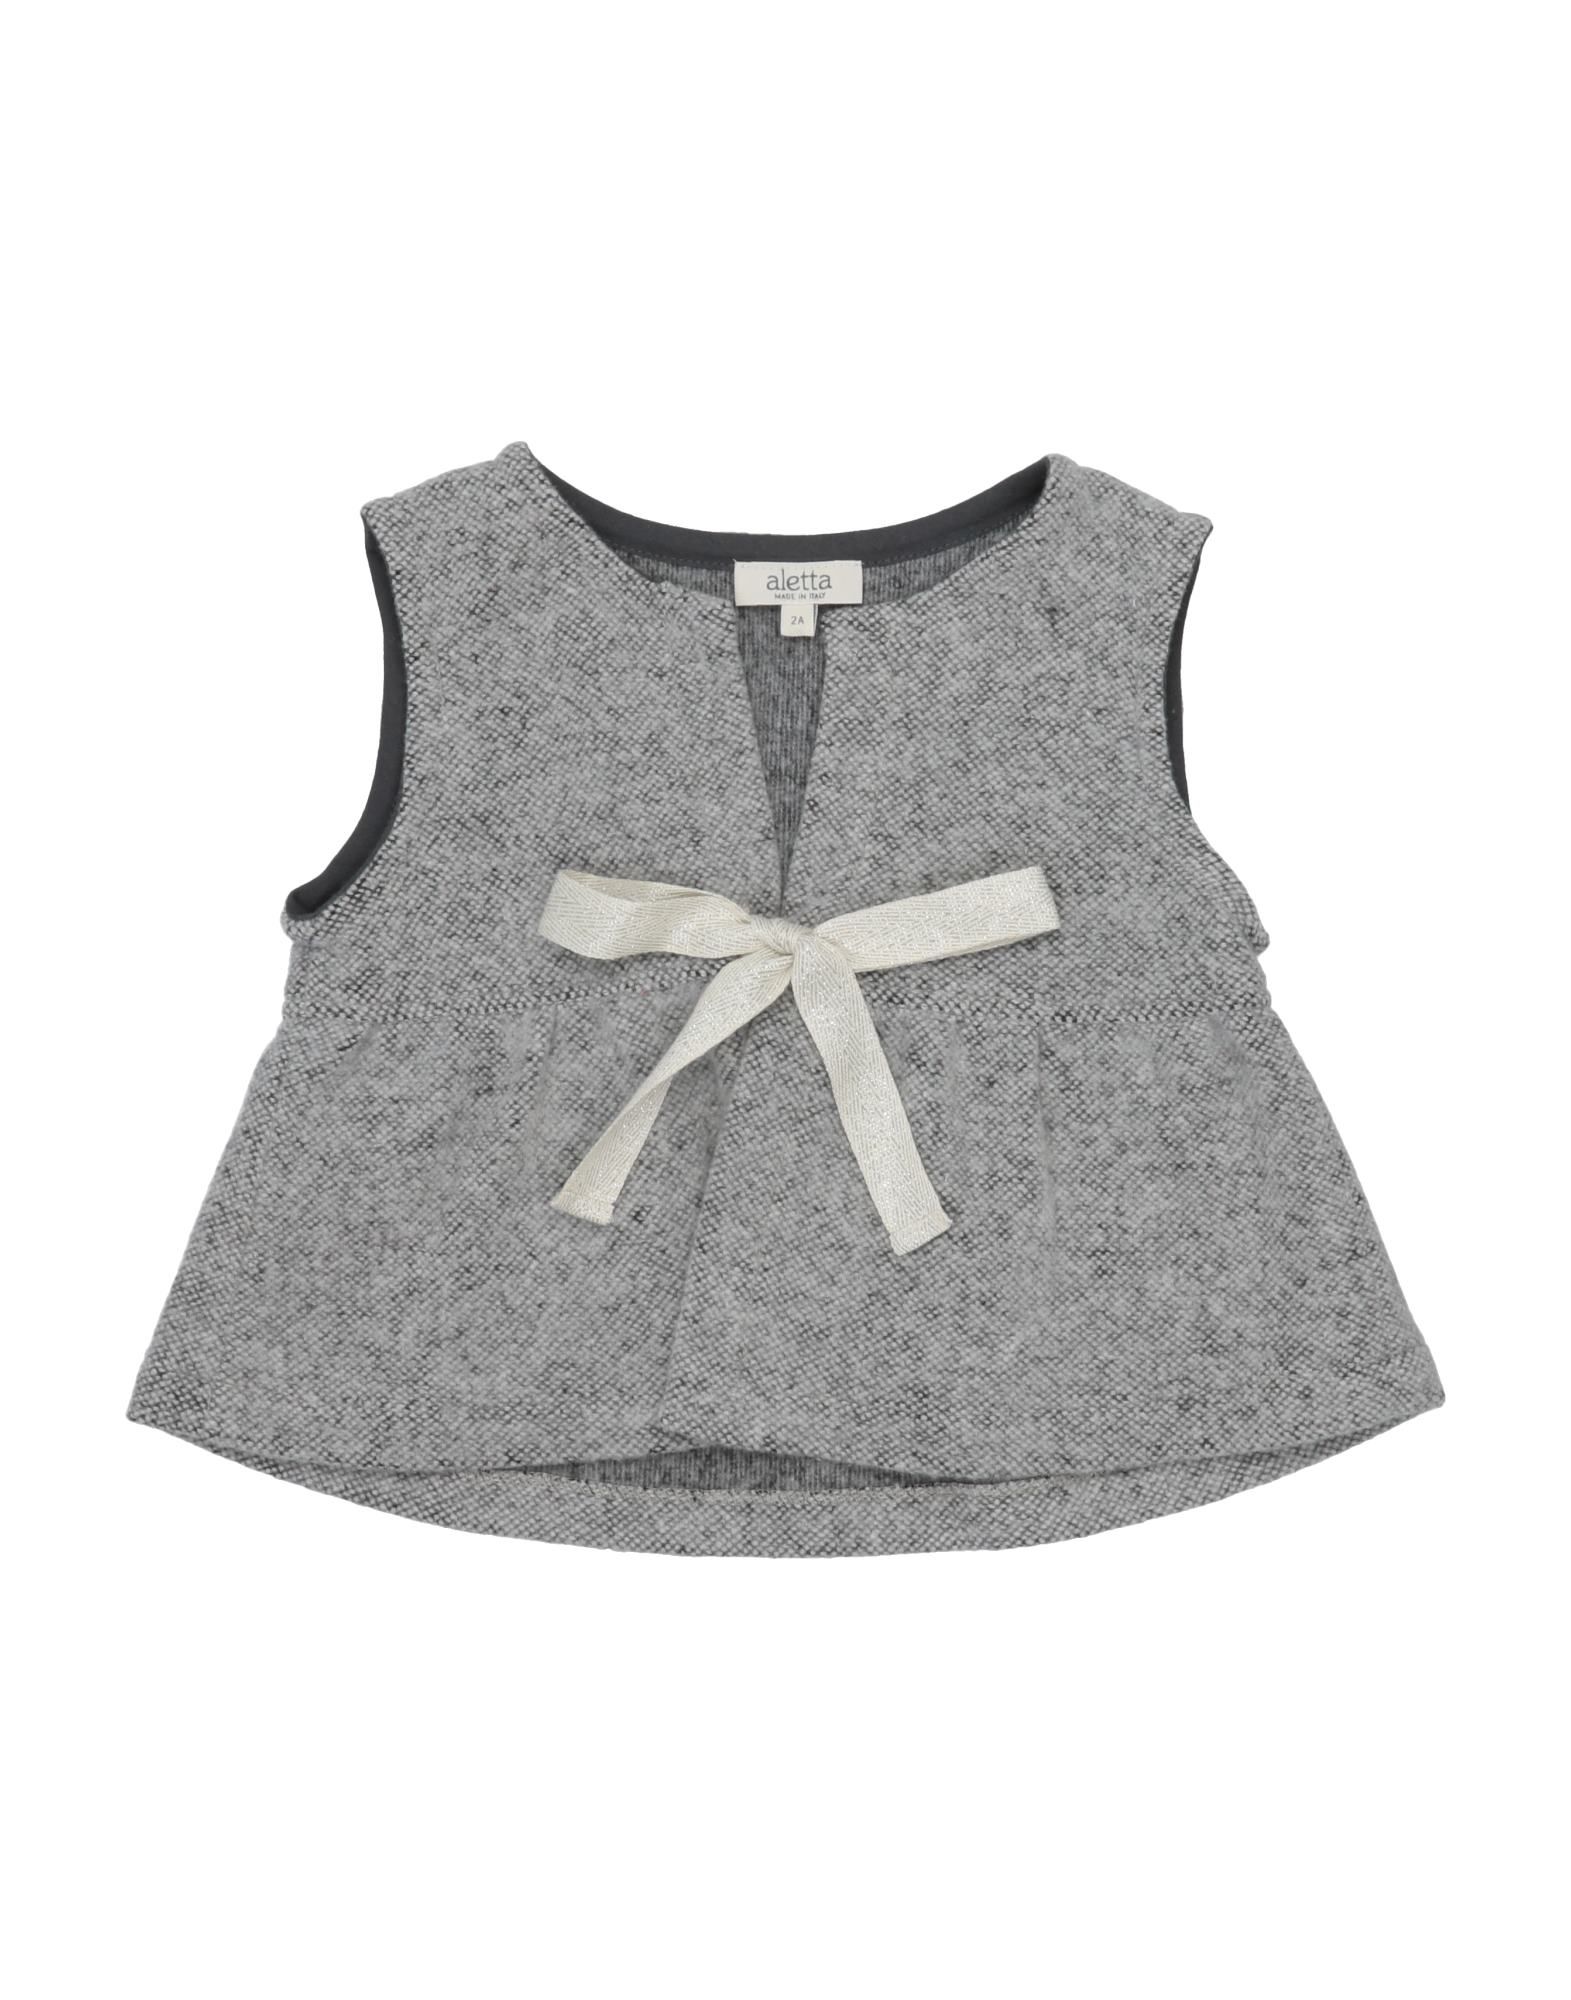 Aletta Babies' Vests In Light Grey